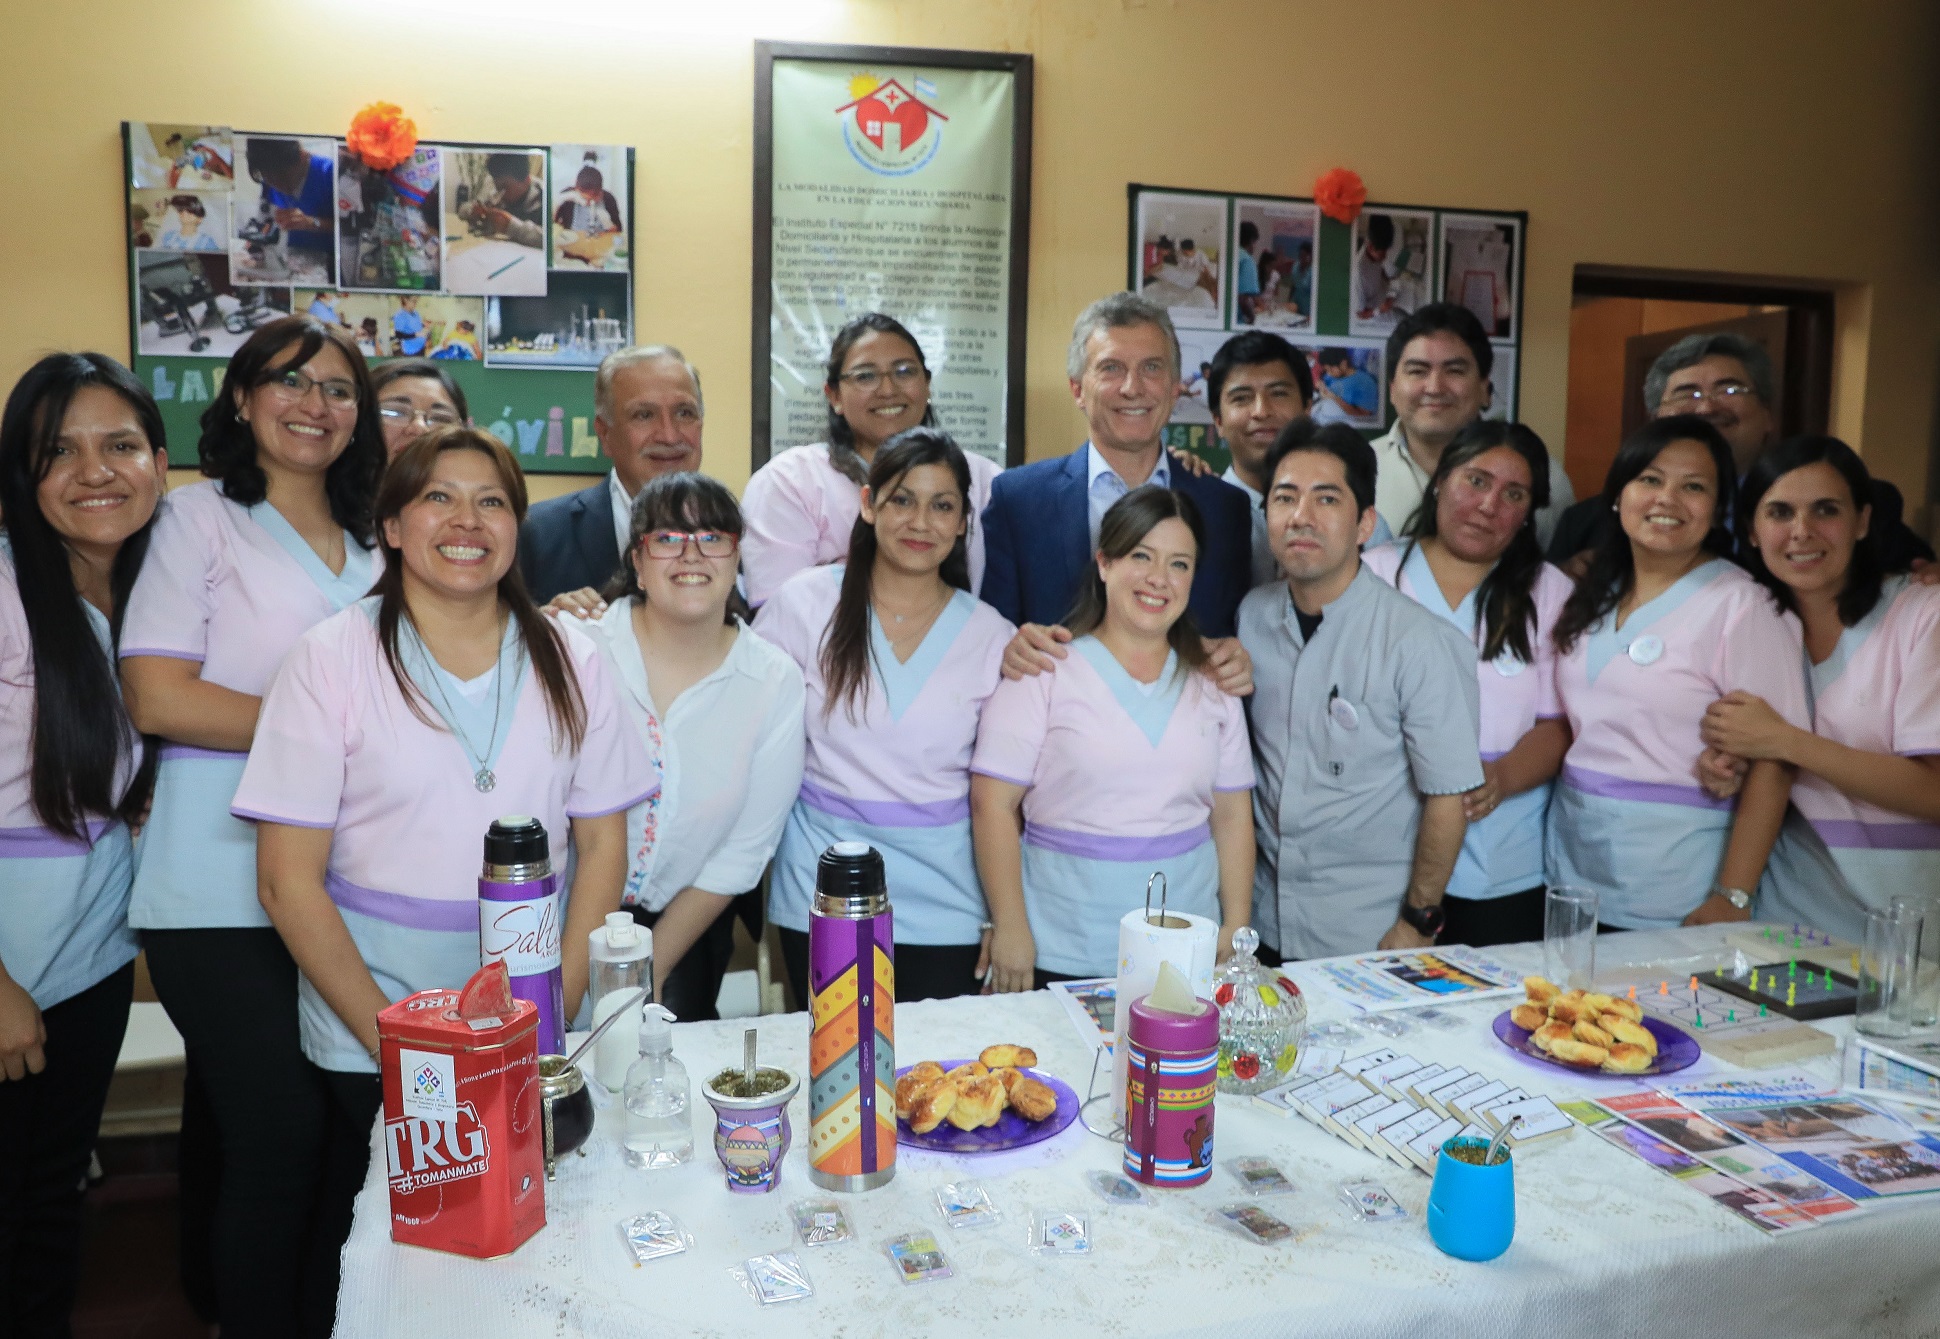 Macri se reunió con docentes premiados por la creación de un proyecto de apoyo escolar